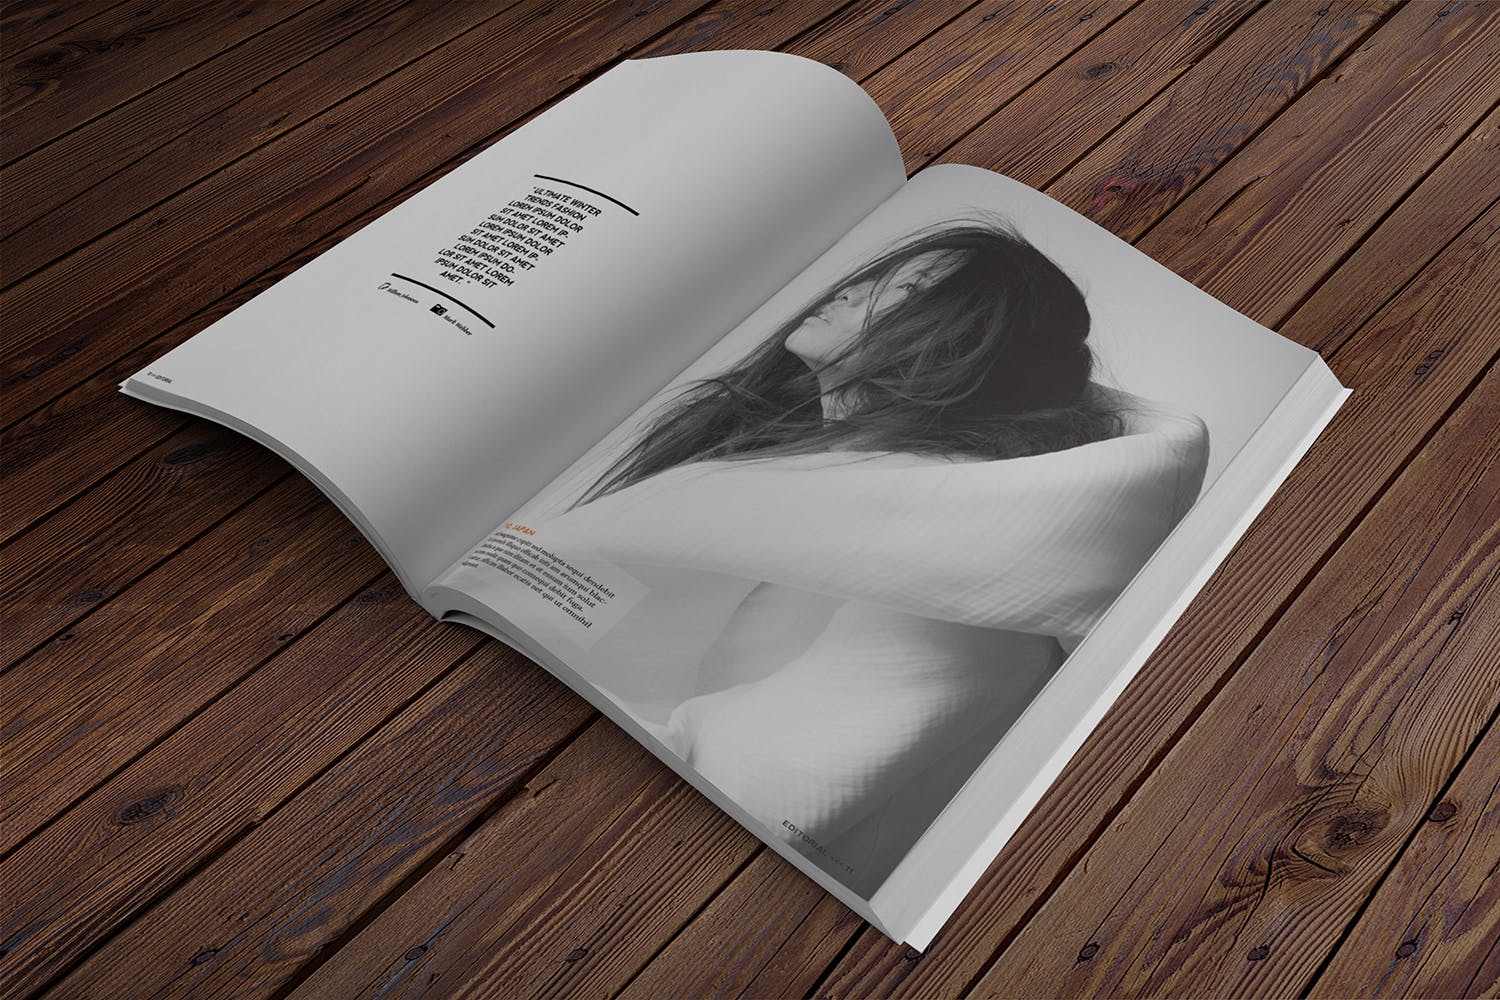 杂志内页排版设计透视图样机蚂蚁素材精选 Magazine Mockup Perspective View插图(2)